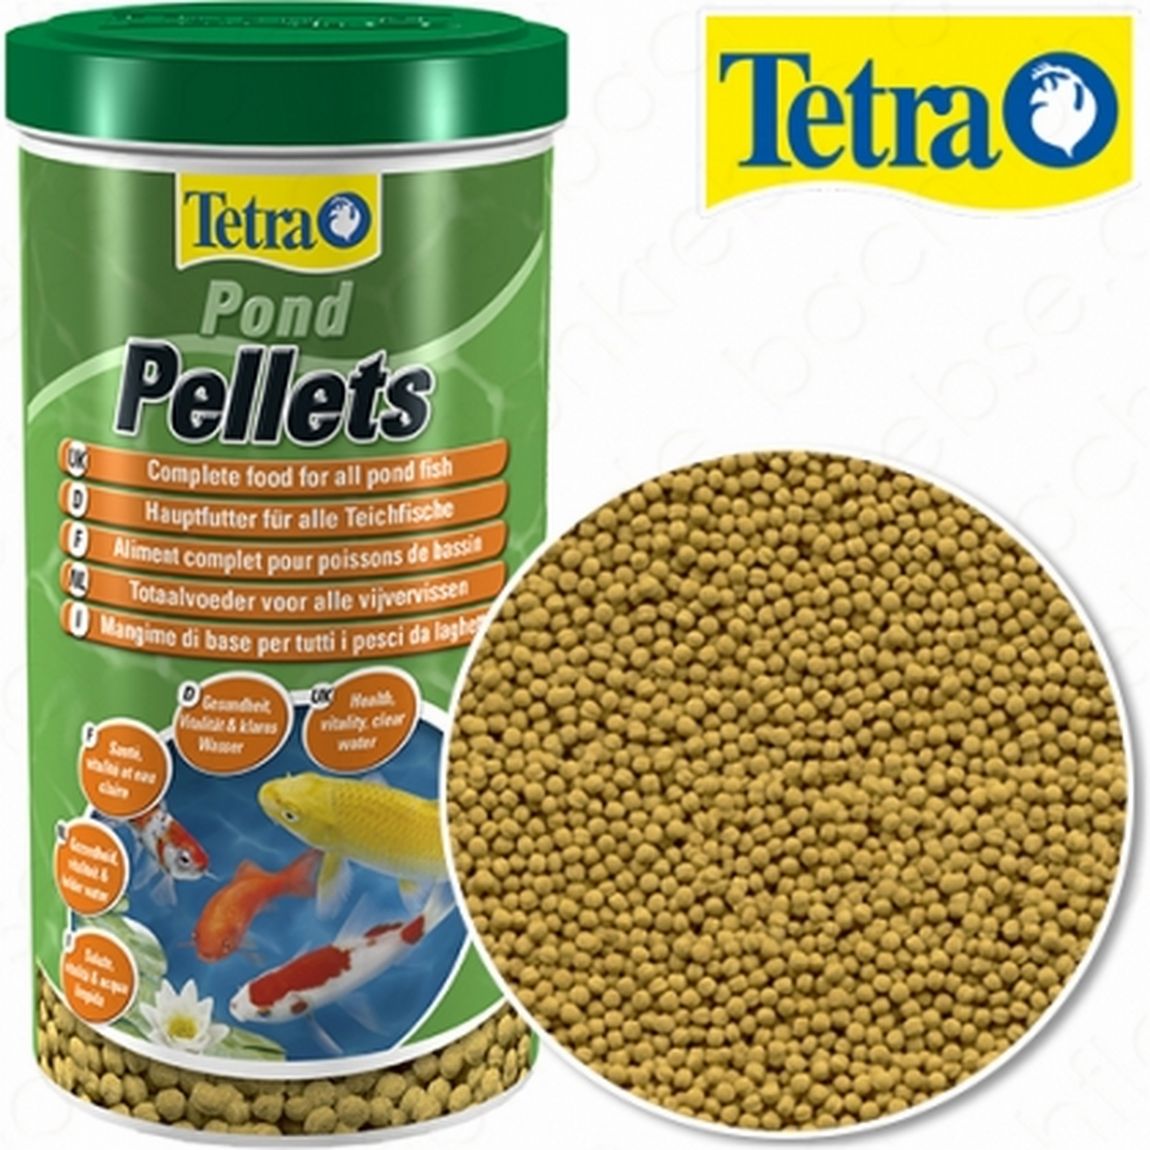 Tetrapond Pellets S 1 L Hrana pentru restul speciilor 2023-09-29